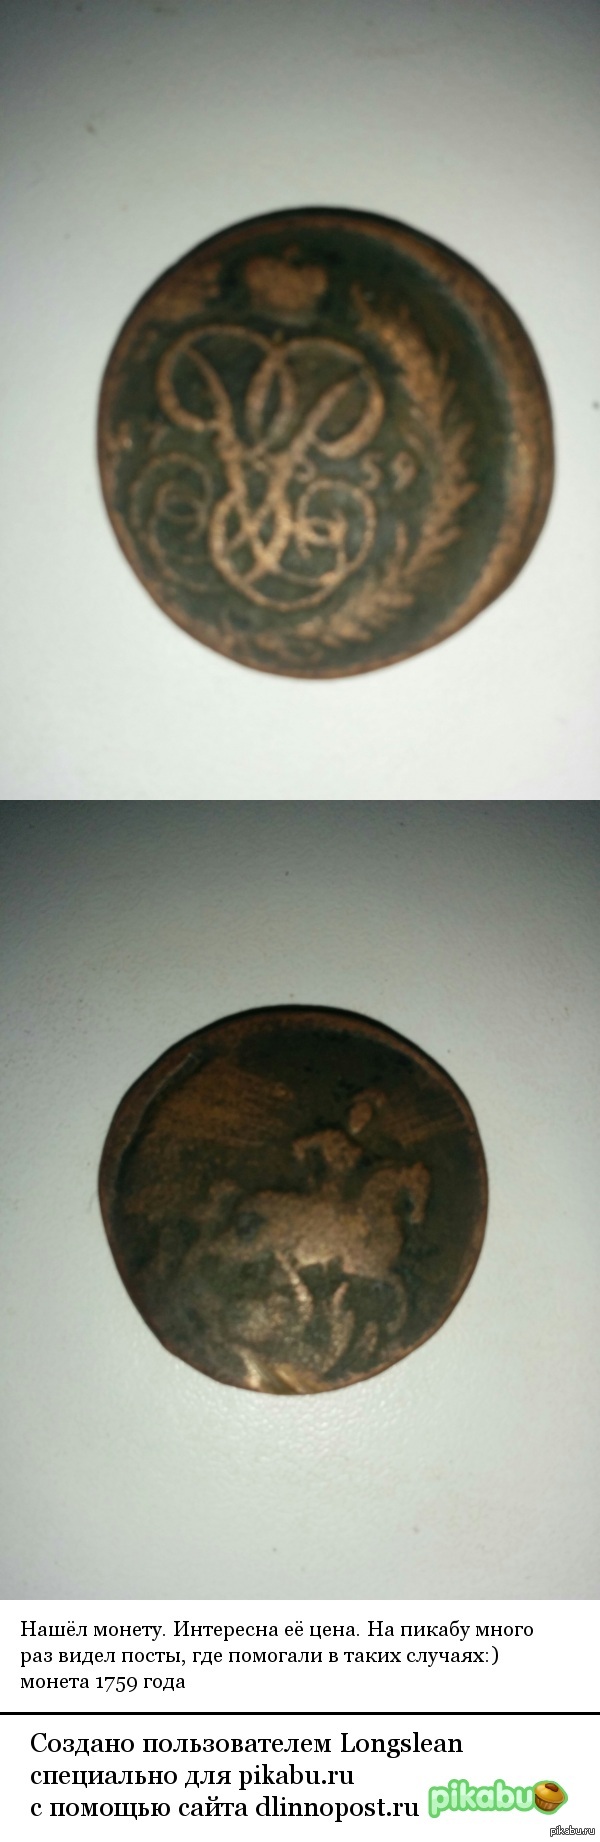 Нашёл монету 1759 года. Имеет ли она какую-нибудь ценность? 